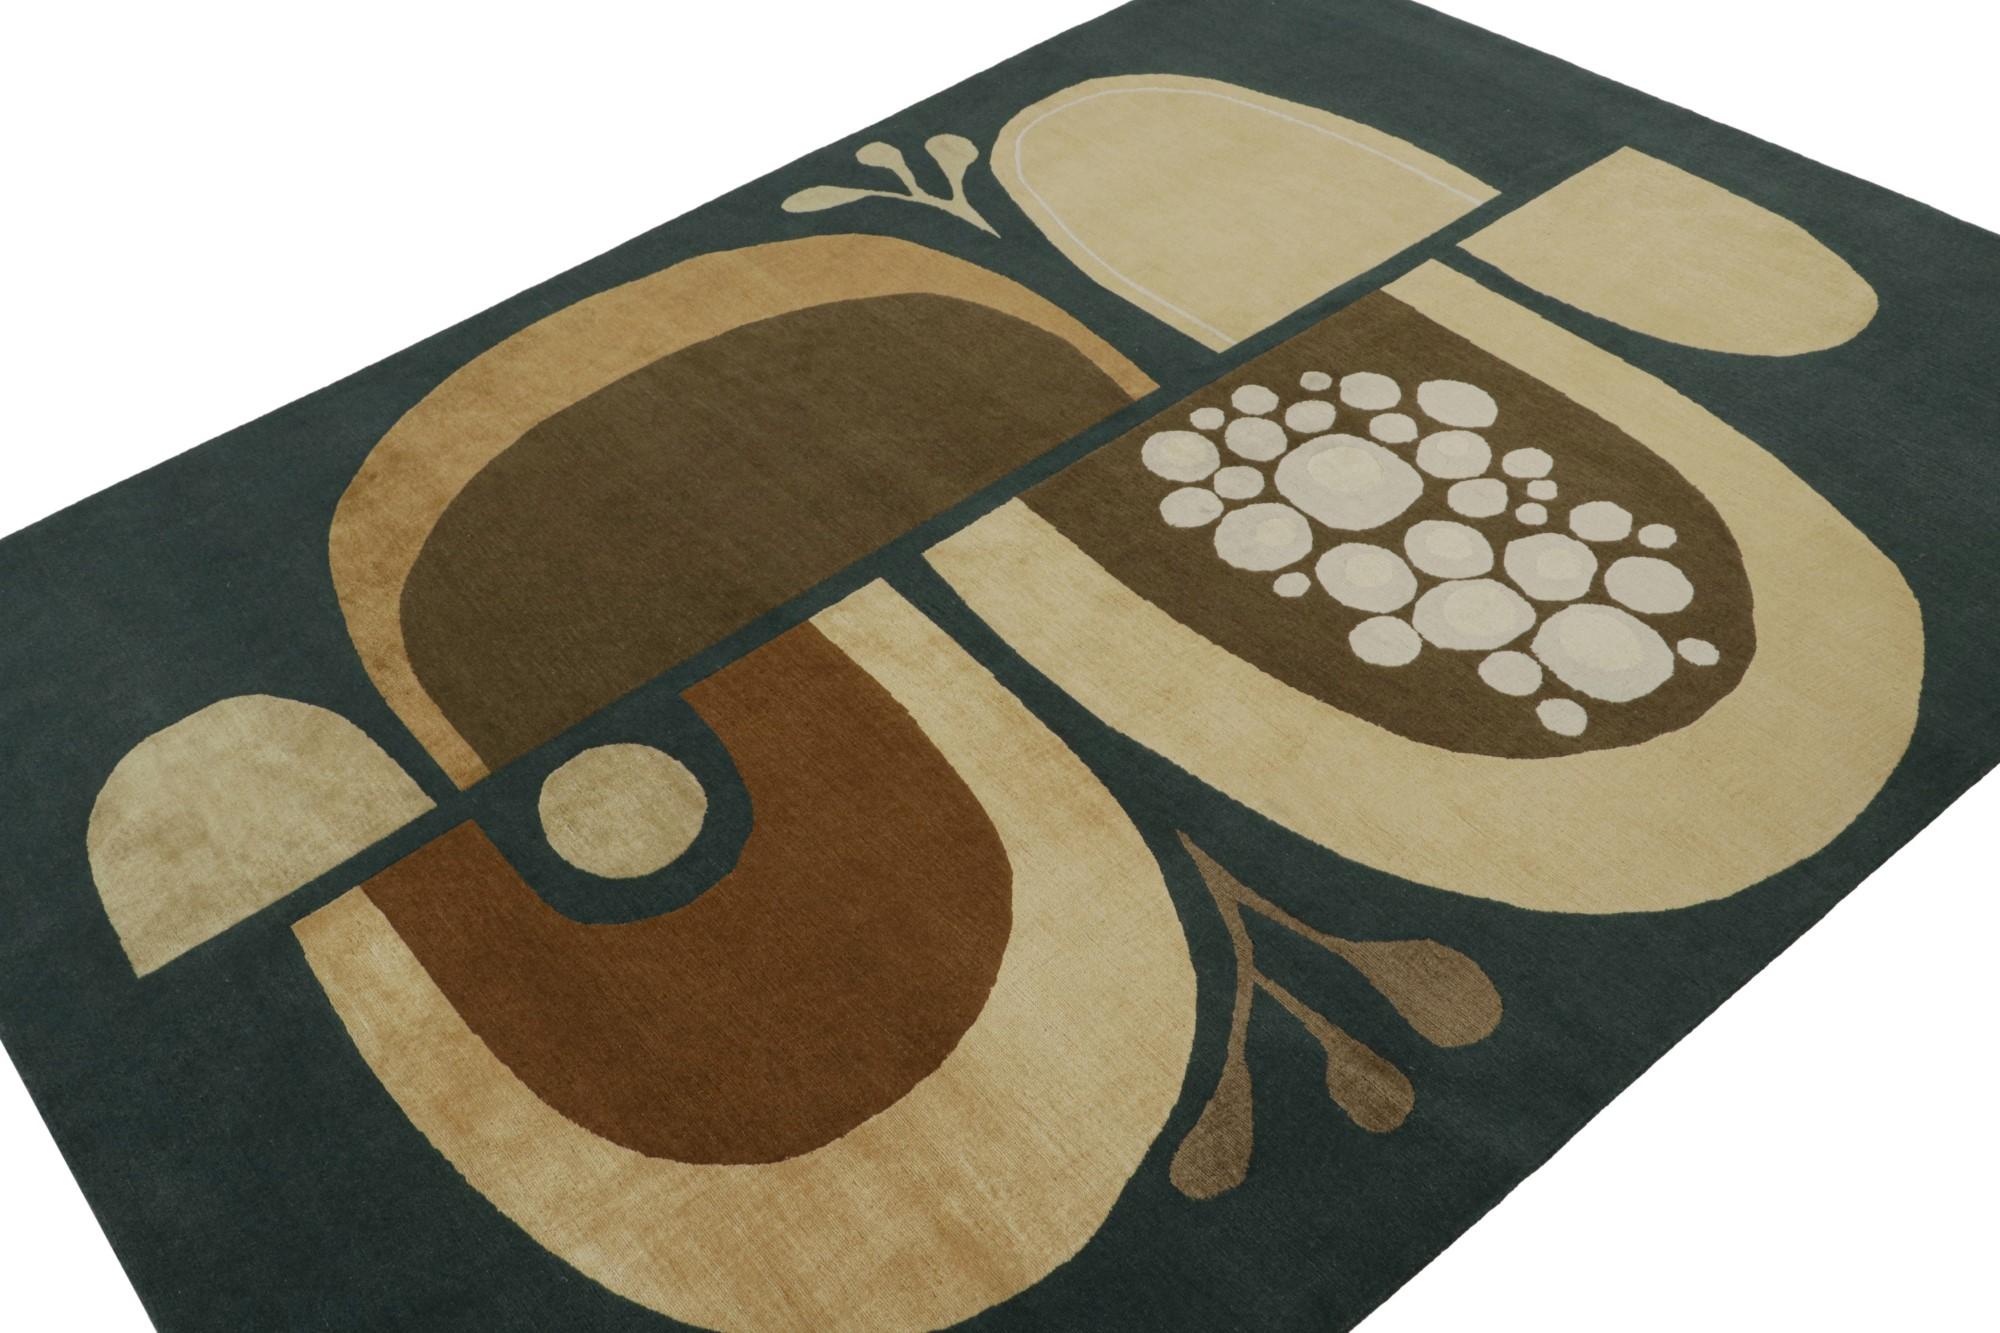 Dieser 6x9 große Teppich ist eine aufregende neue Ergänzung der Art Deco-Teppichkollektion von Rug & Kilim.  

Über das Design: 

Dieser moderne, handgeknüpfte Wollteppich erinnert an den chinesischen Art-Déco-Stil der 1920er Jahre. Das florale